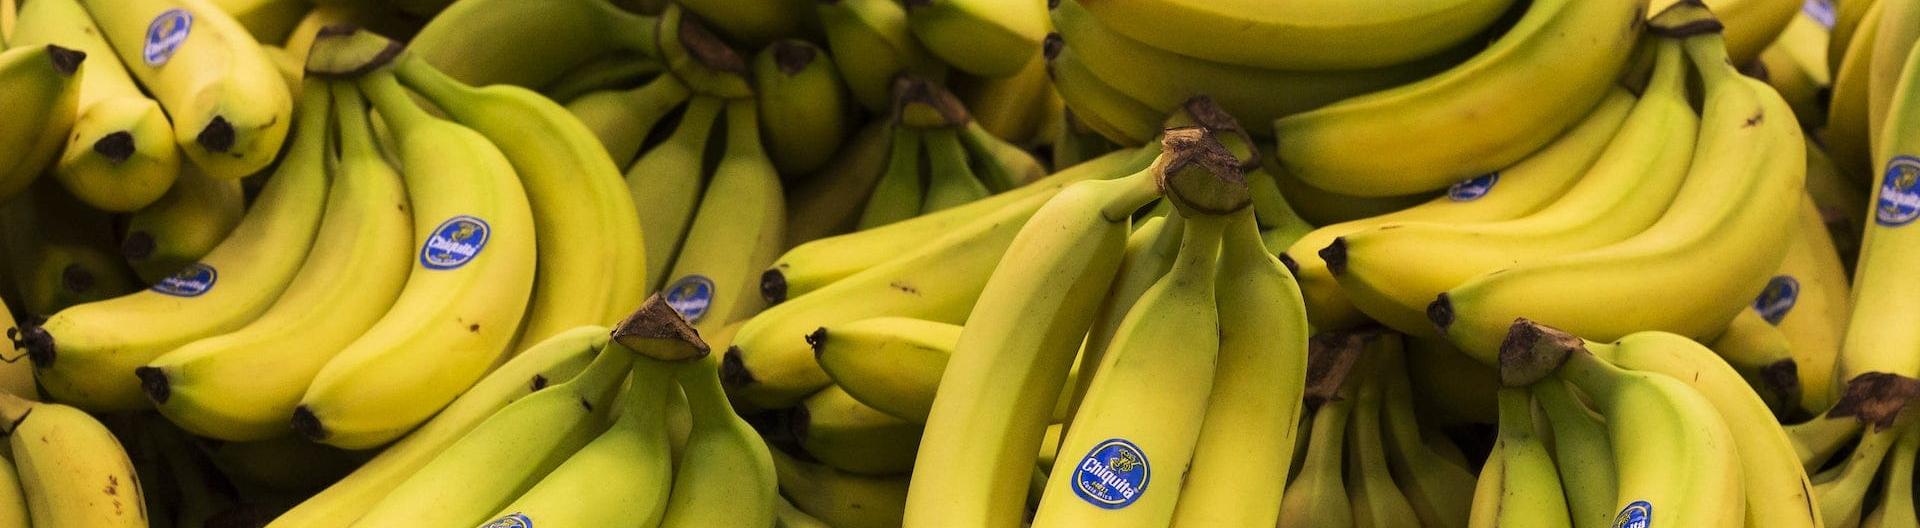 Австралия первая в мире разрешила генномодифицированные бананы 